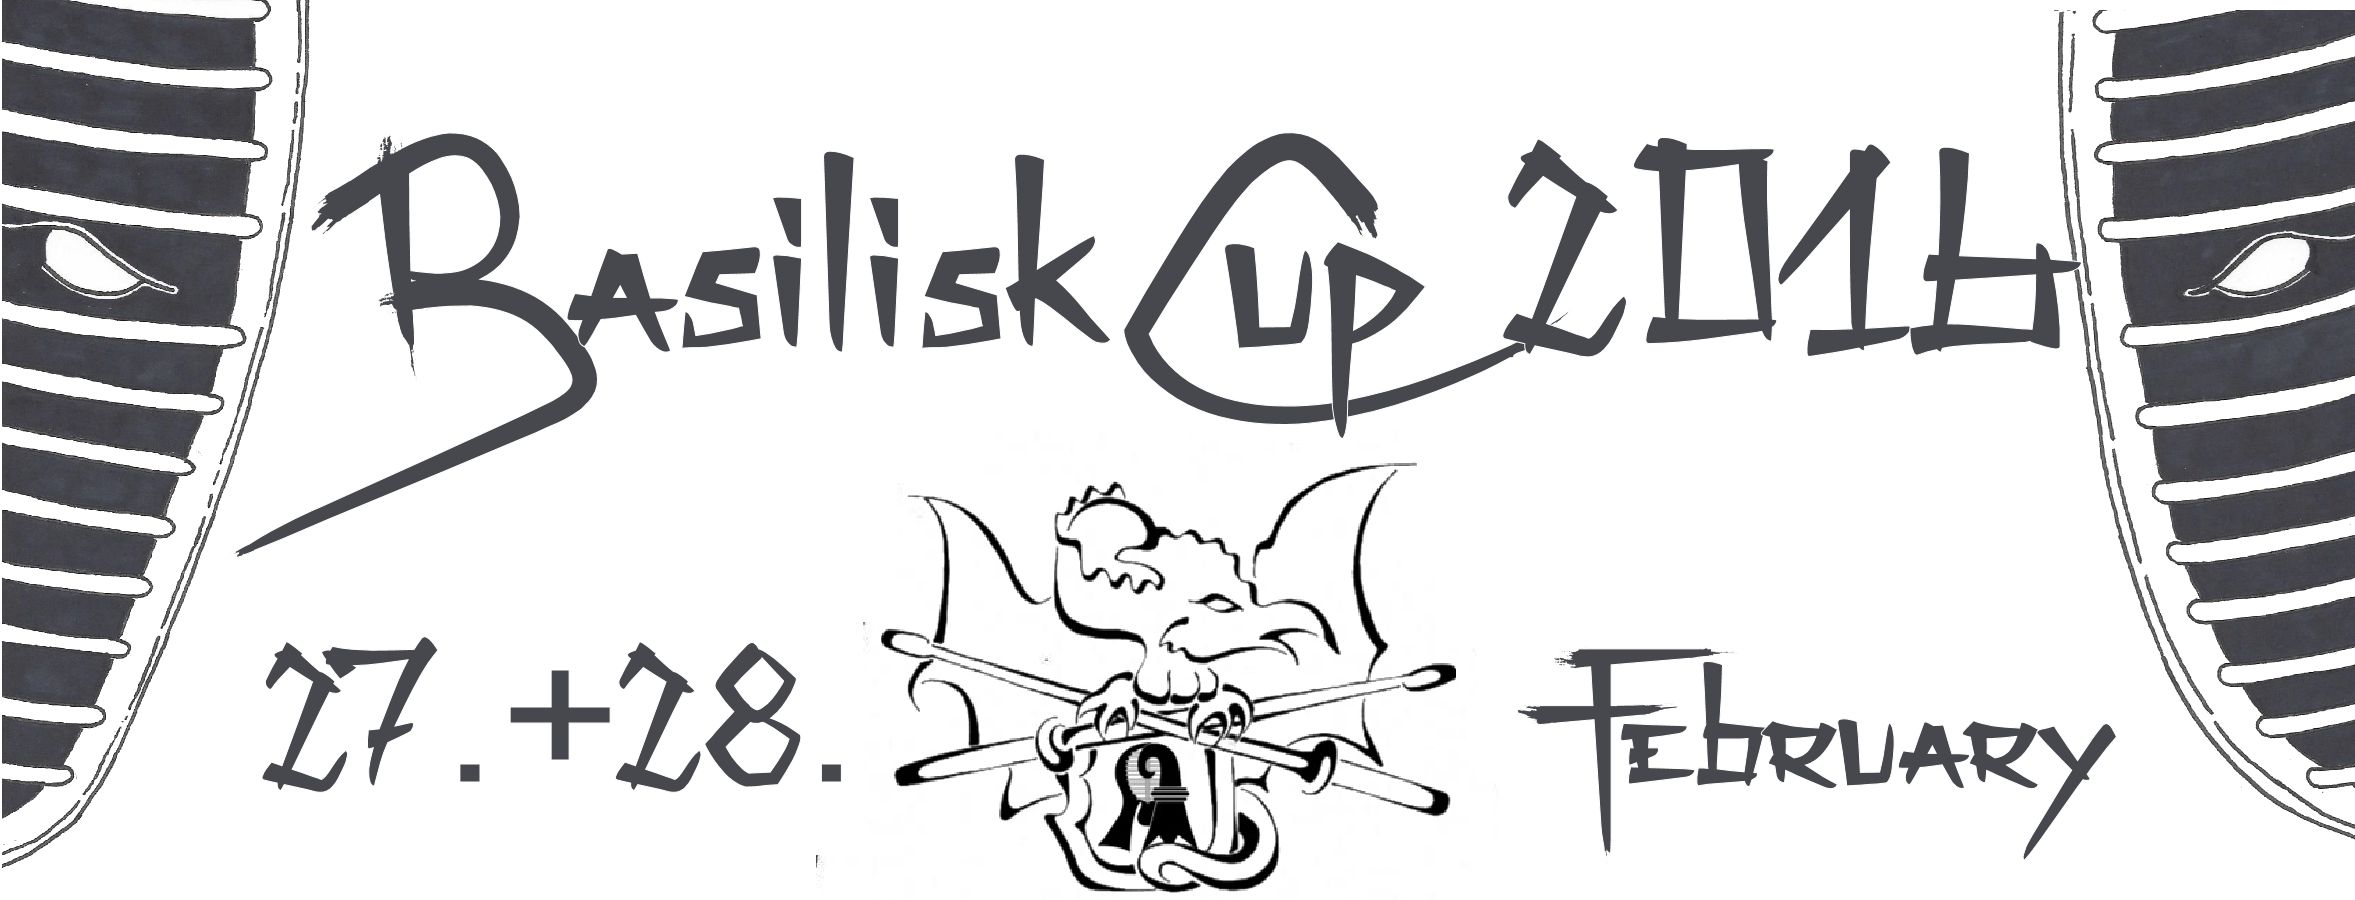 Basilisk Cup Anmeldungen sind online!